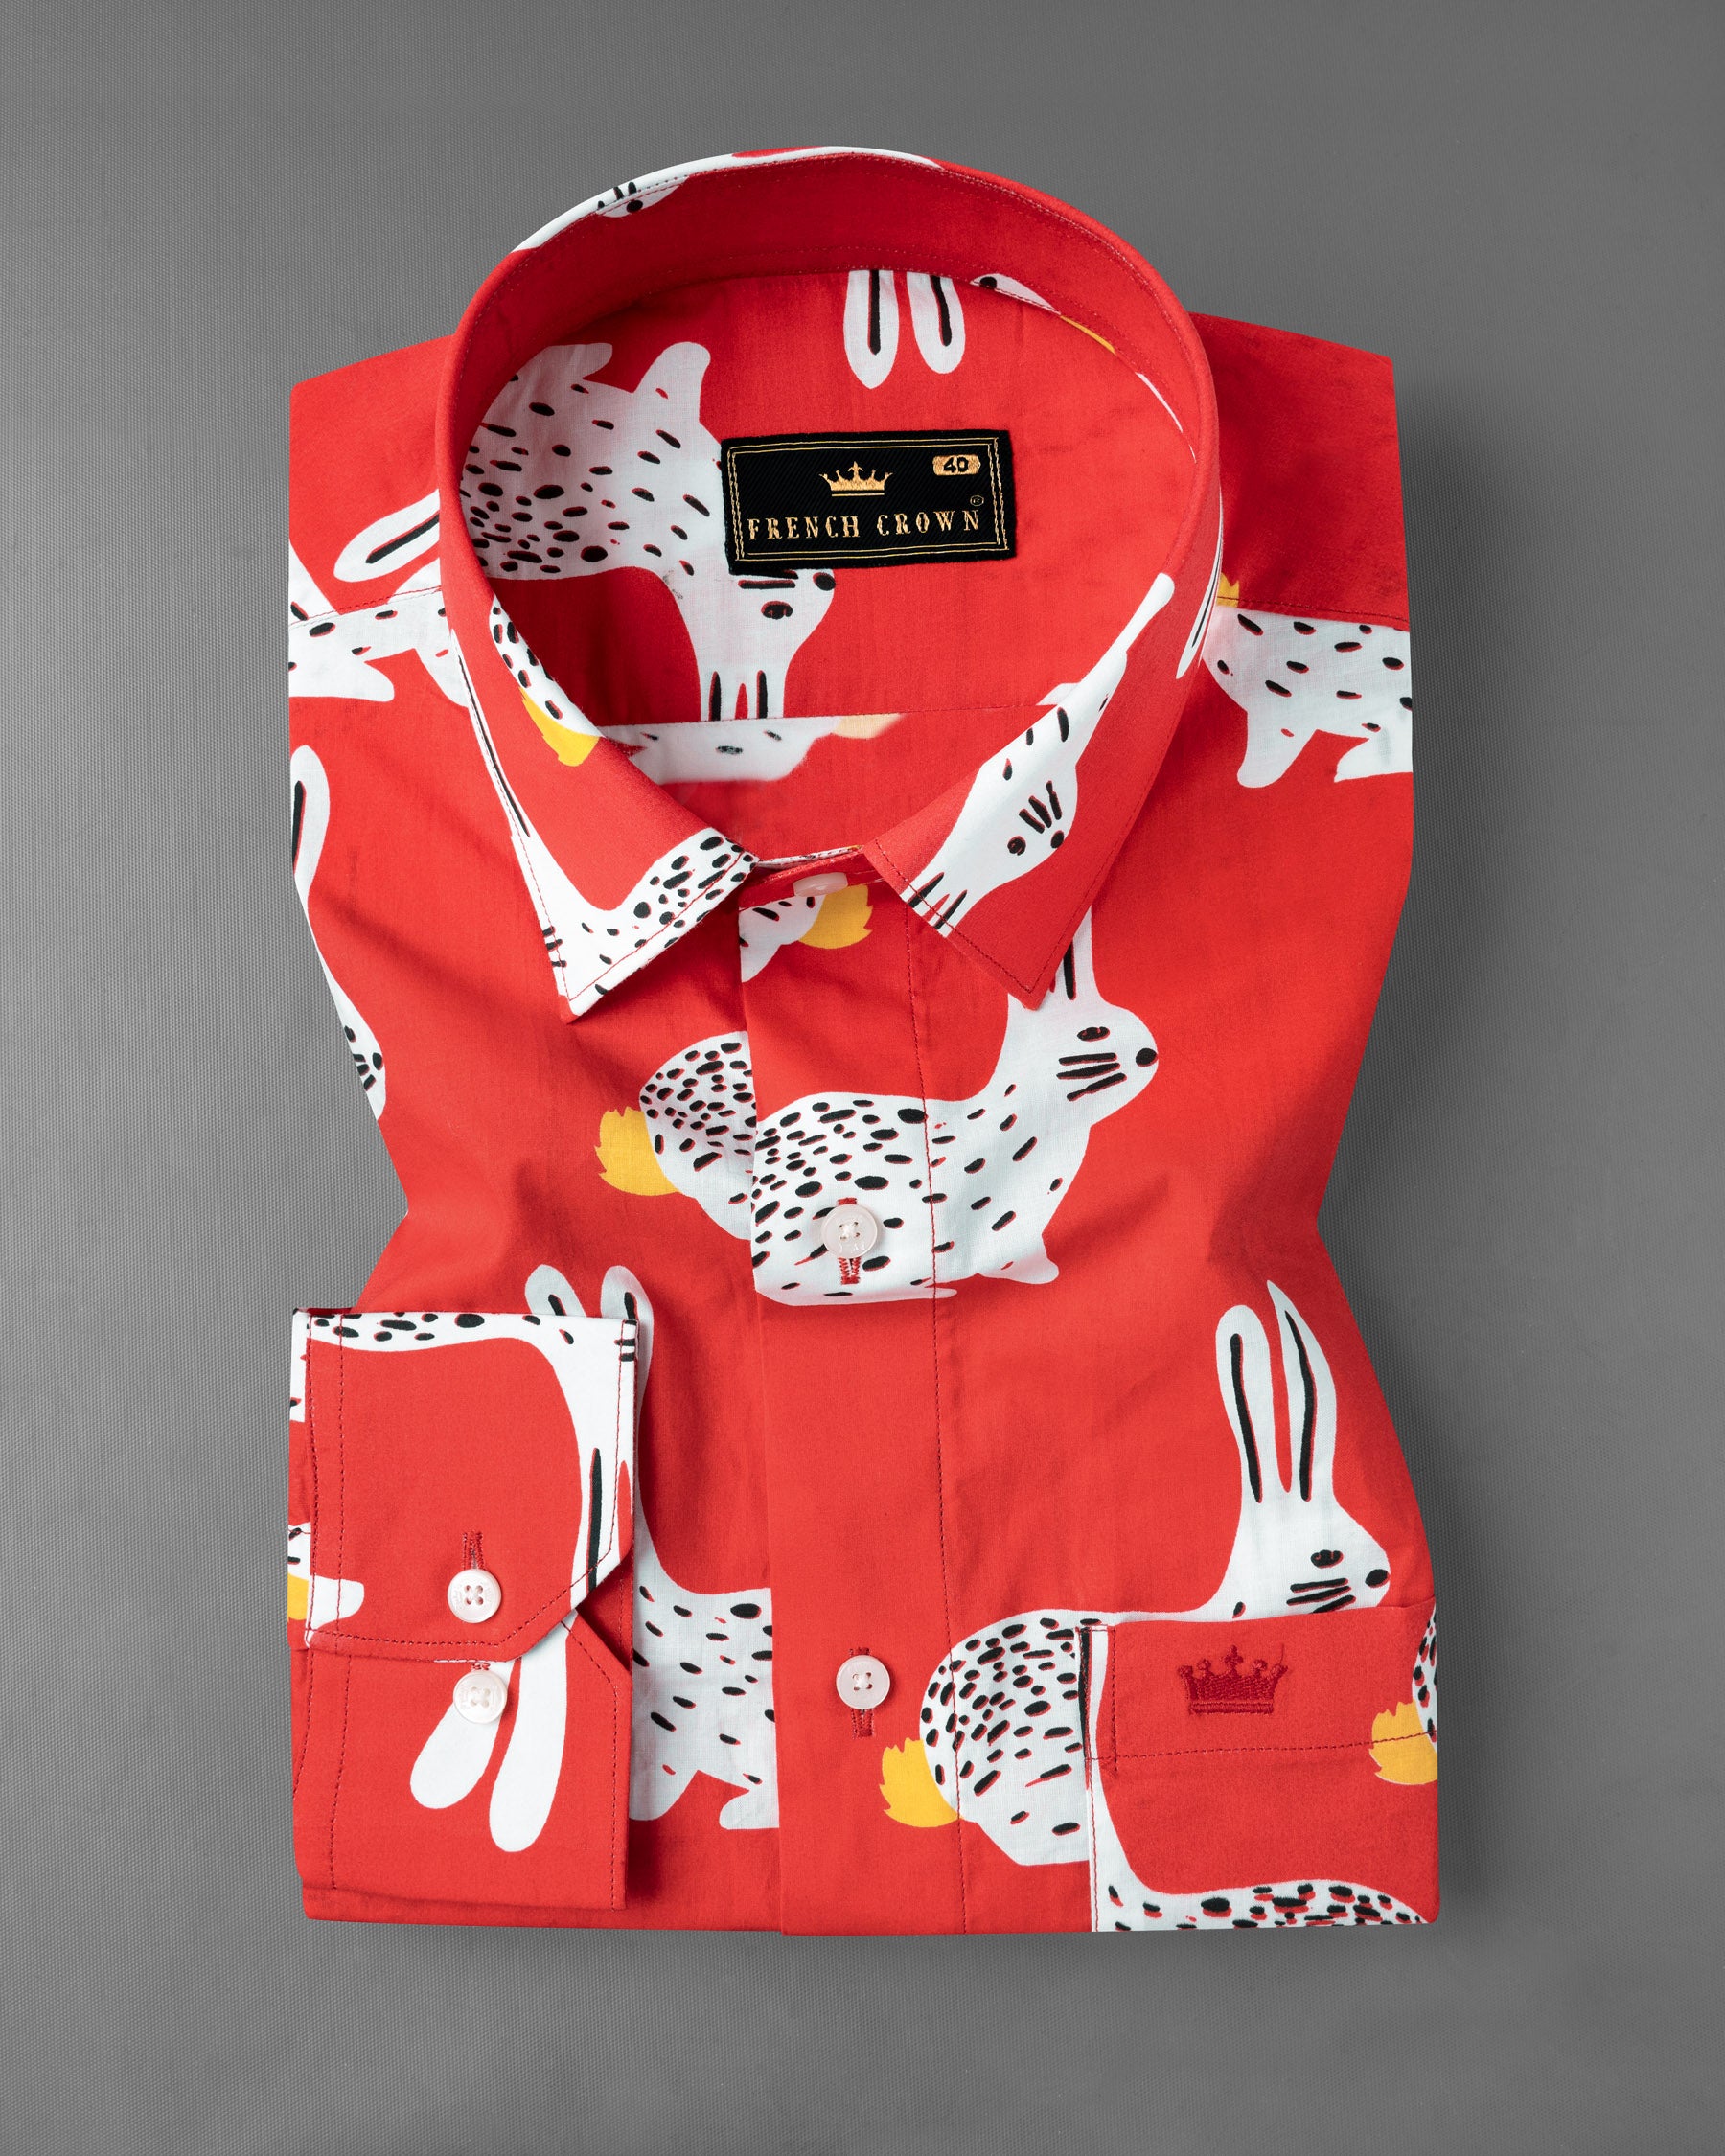 Cinnabar Red and White Rabbit Printed Premium Cotton Shirt 7072-38,7072-38,7072-39,7072-39,7072-40,7072-40,7072-42,7072-42,7072-44,7072-44,7072-46,7072-46,7072-48,7072-48,7072-50,7072-50,7072-52,7072-52